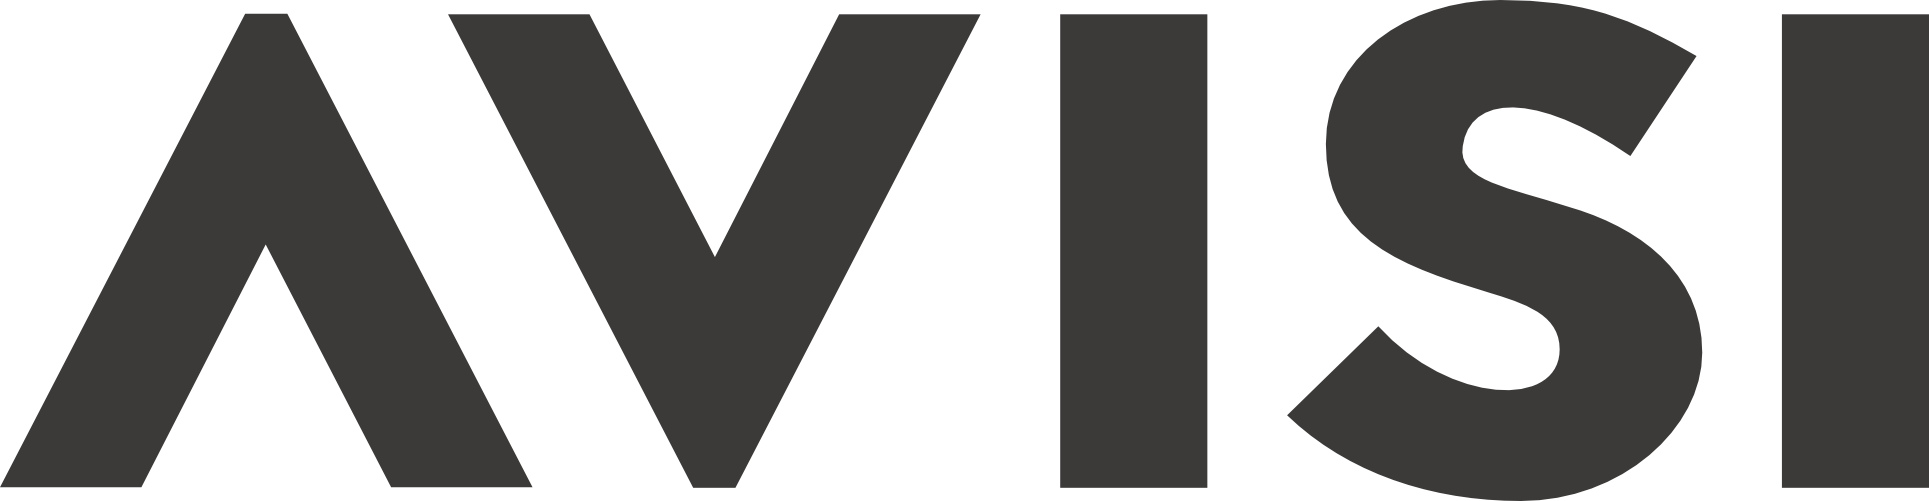 Avisi のロゴ